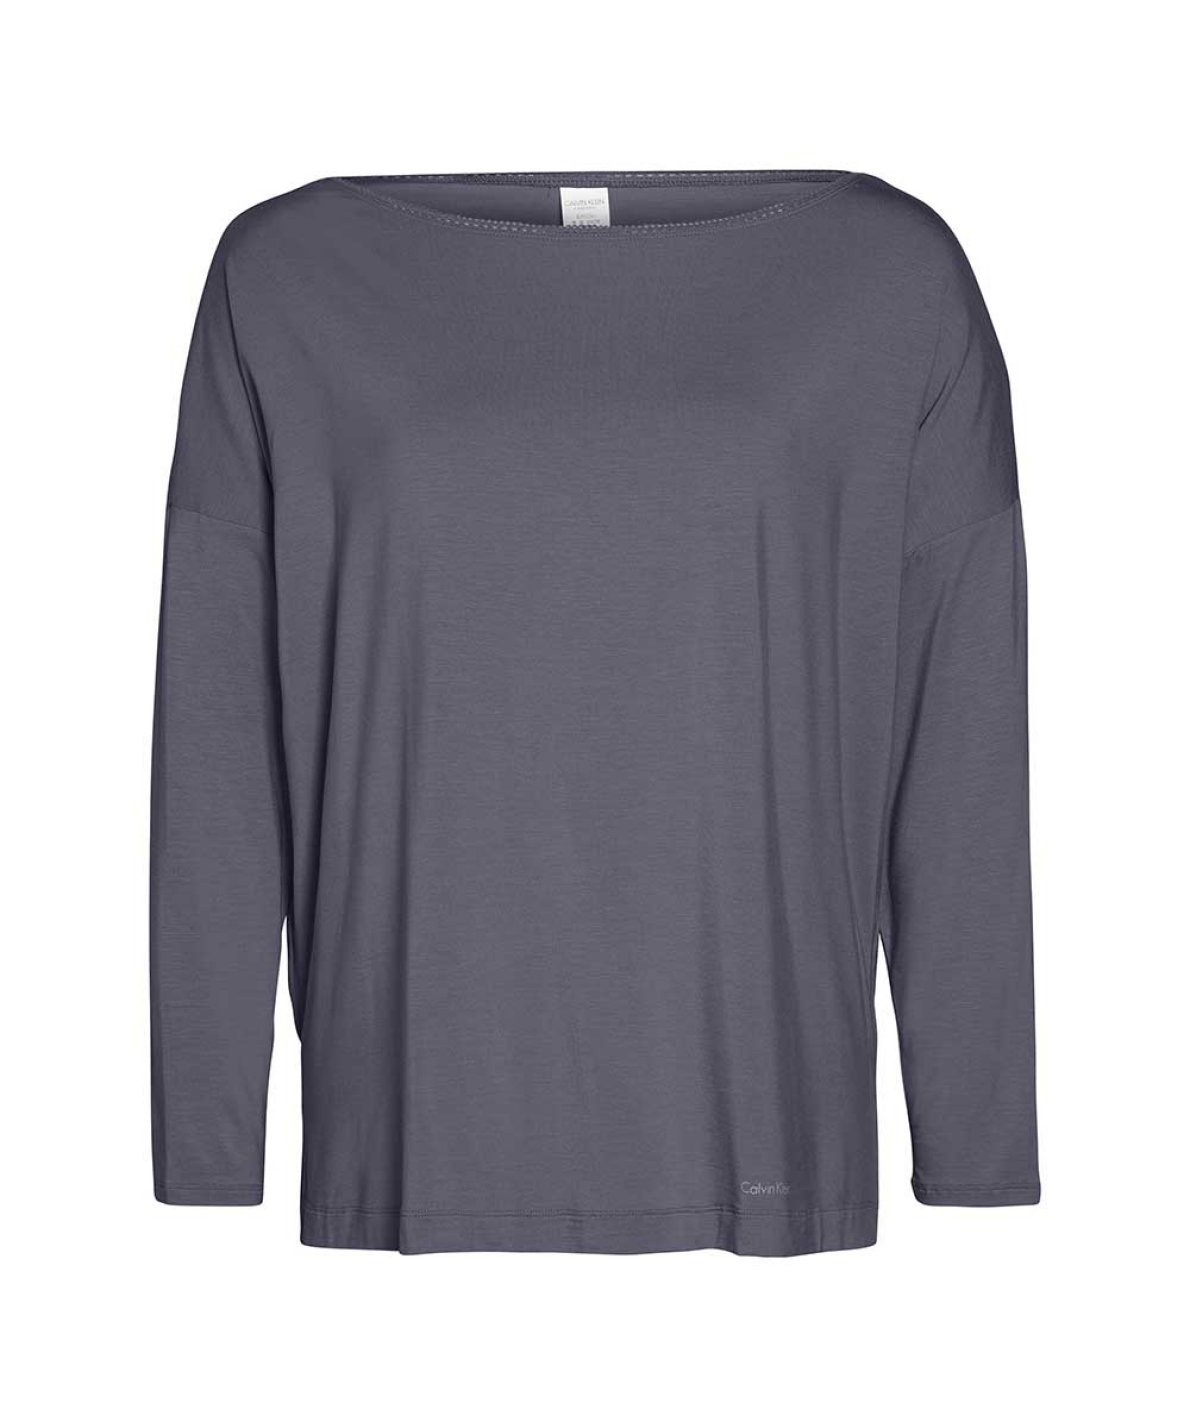 Dámské triko na spaní model 8344650 šedá šedá L - Calvin Klein